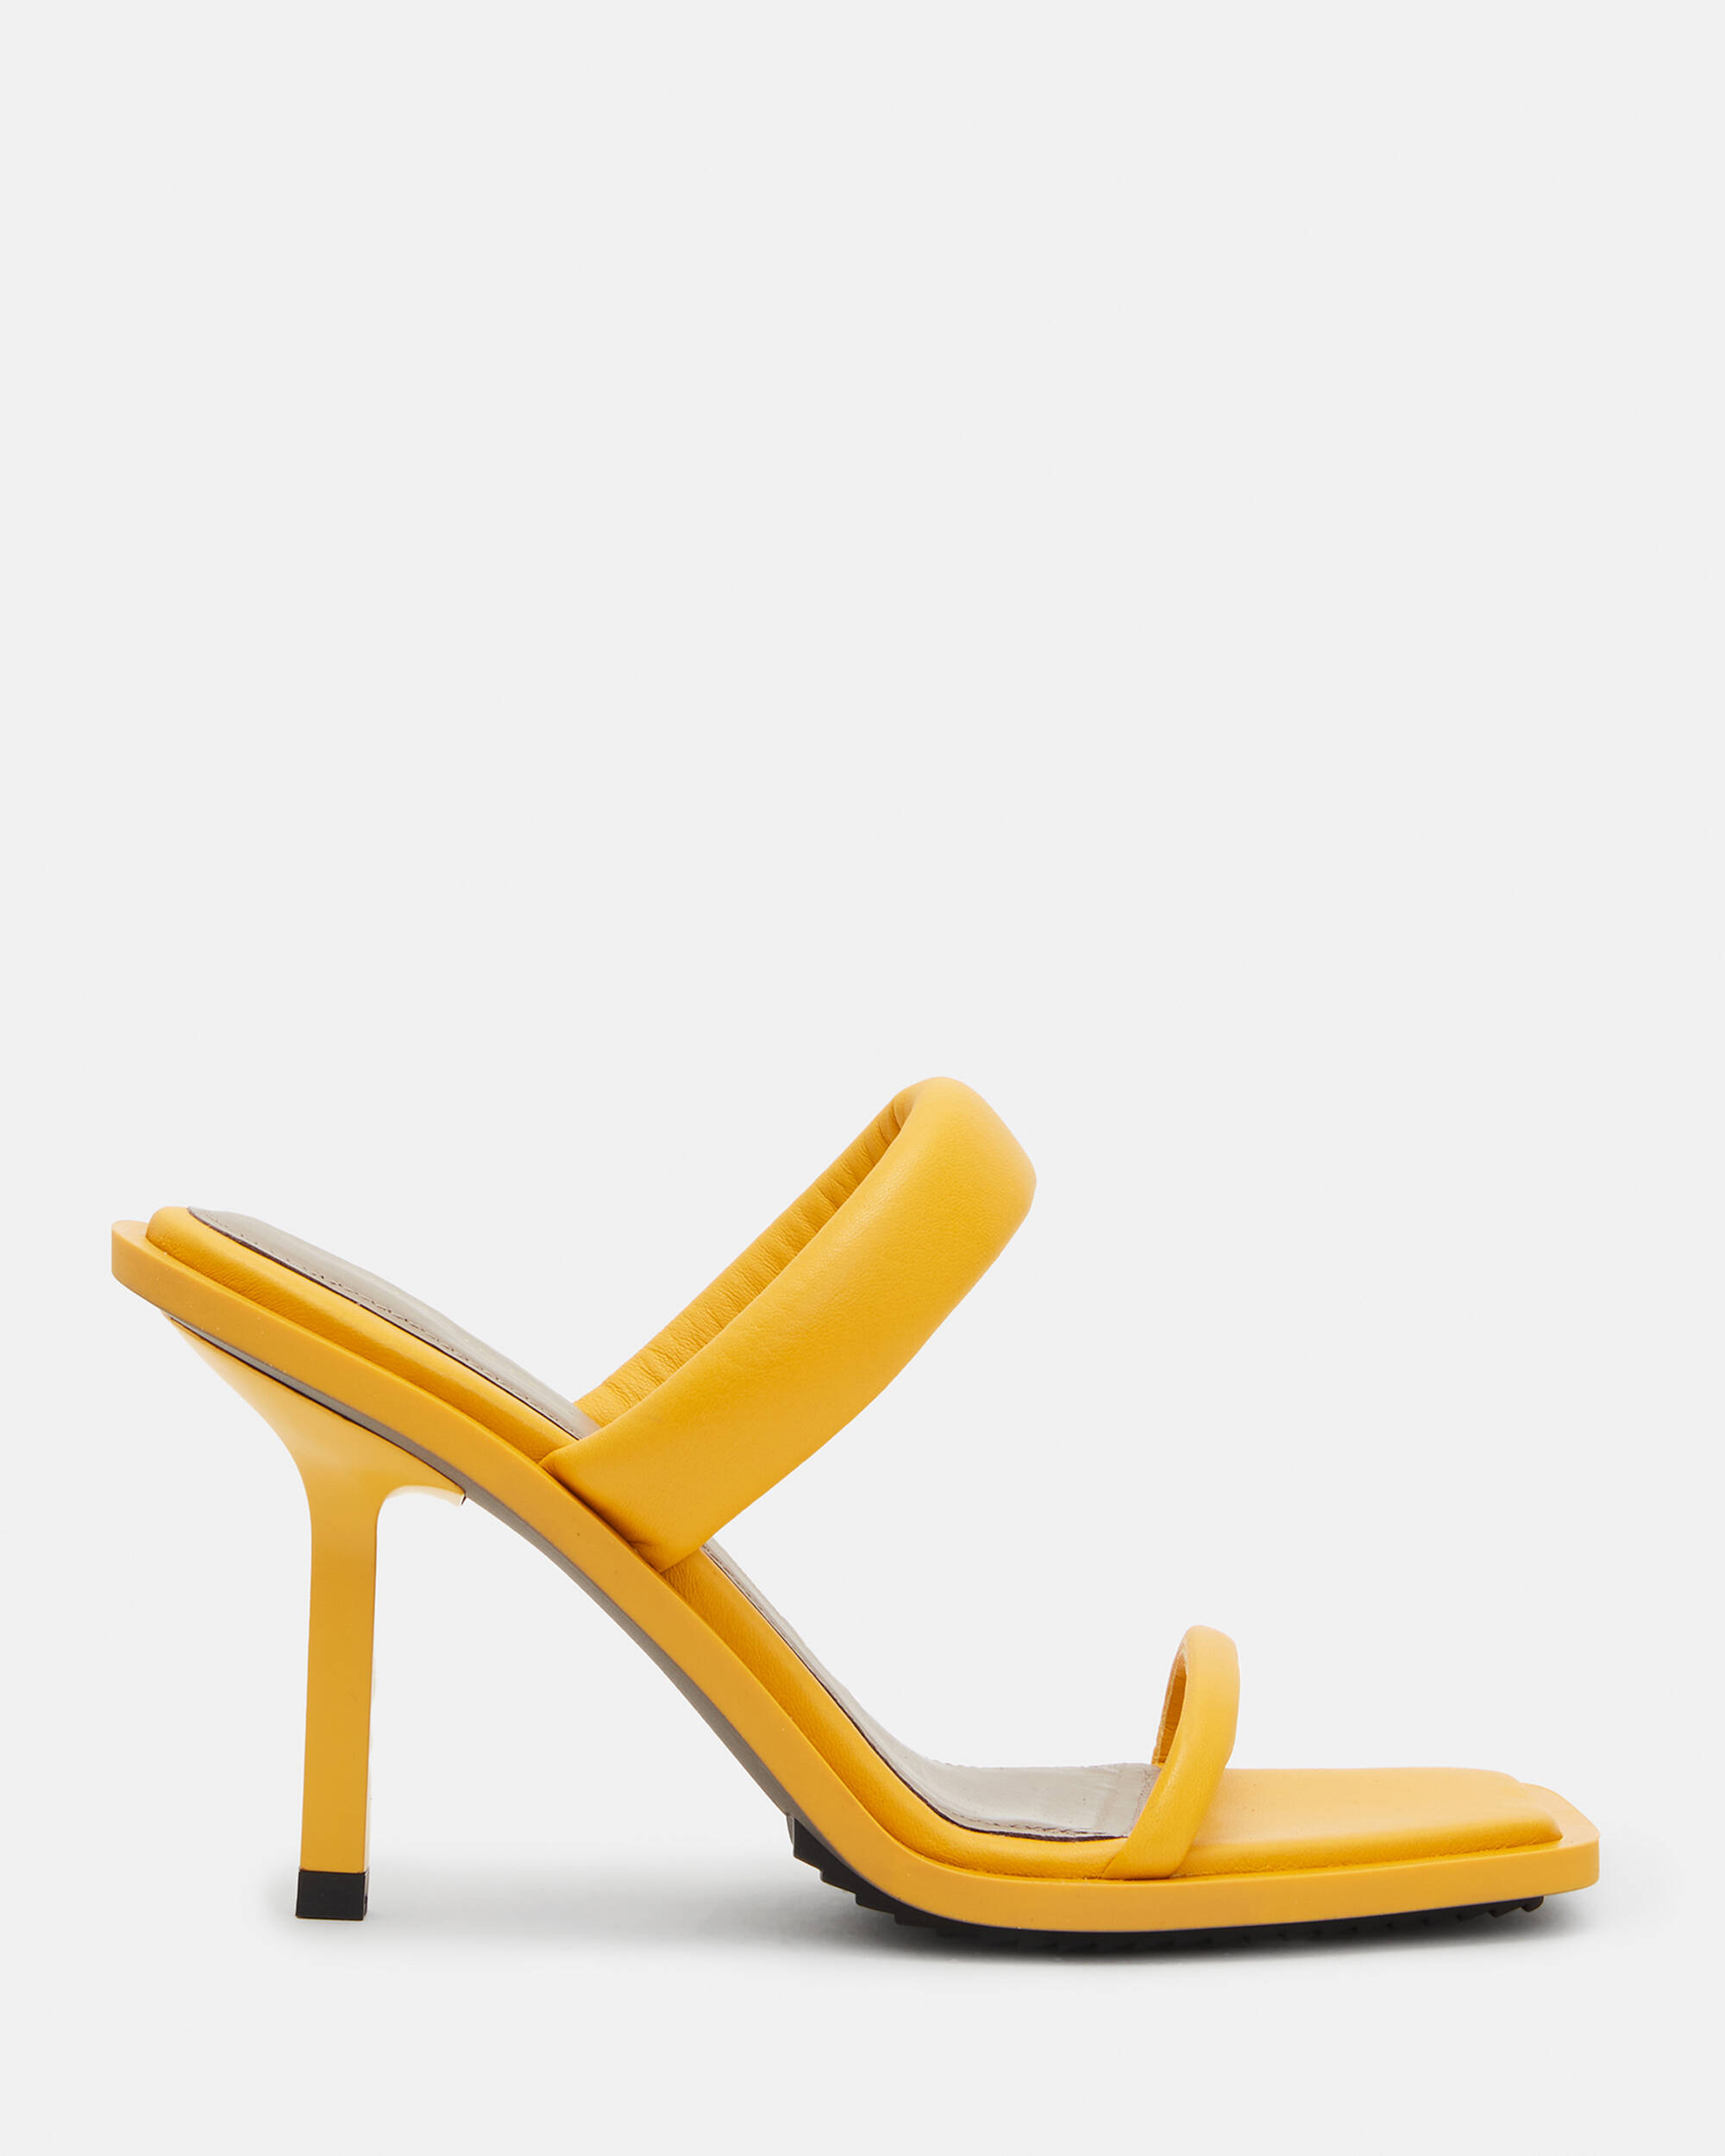 yellow sandals heels